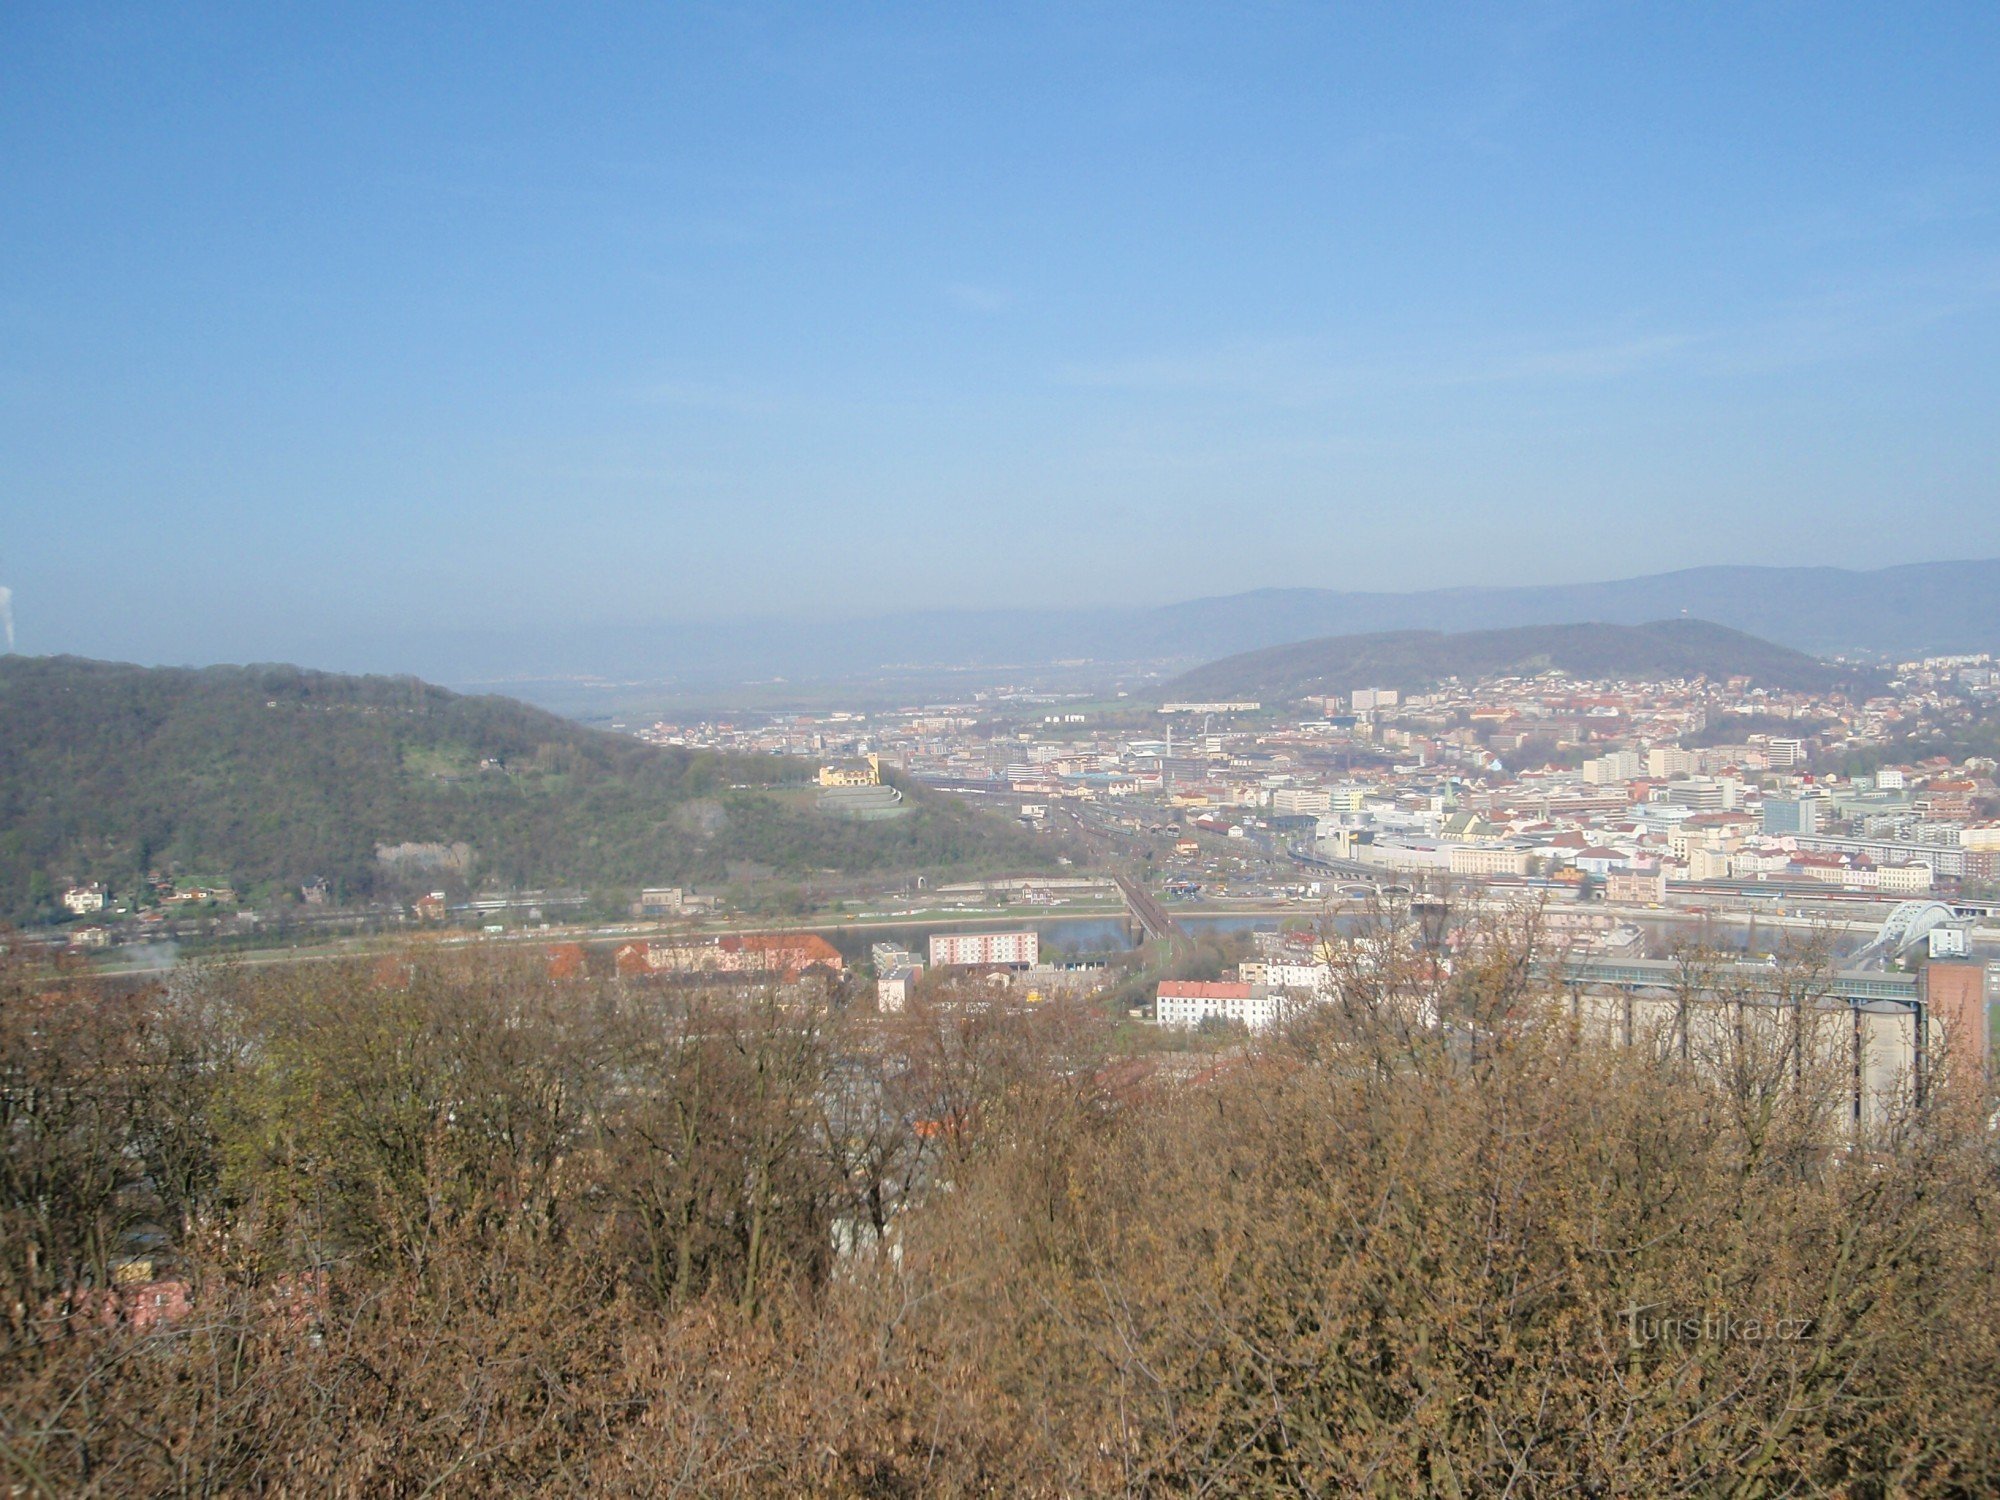 Vedere din punctul de belvedere Ústí, pe dealul din stânga, clădire galbenă, castelul Větruše